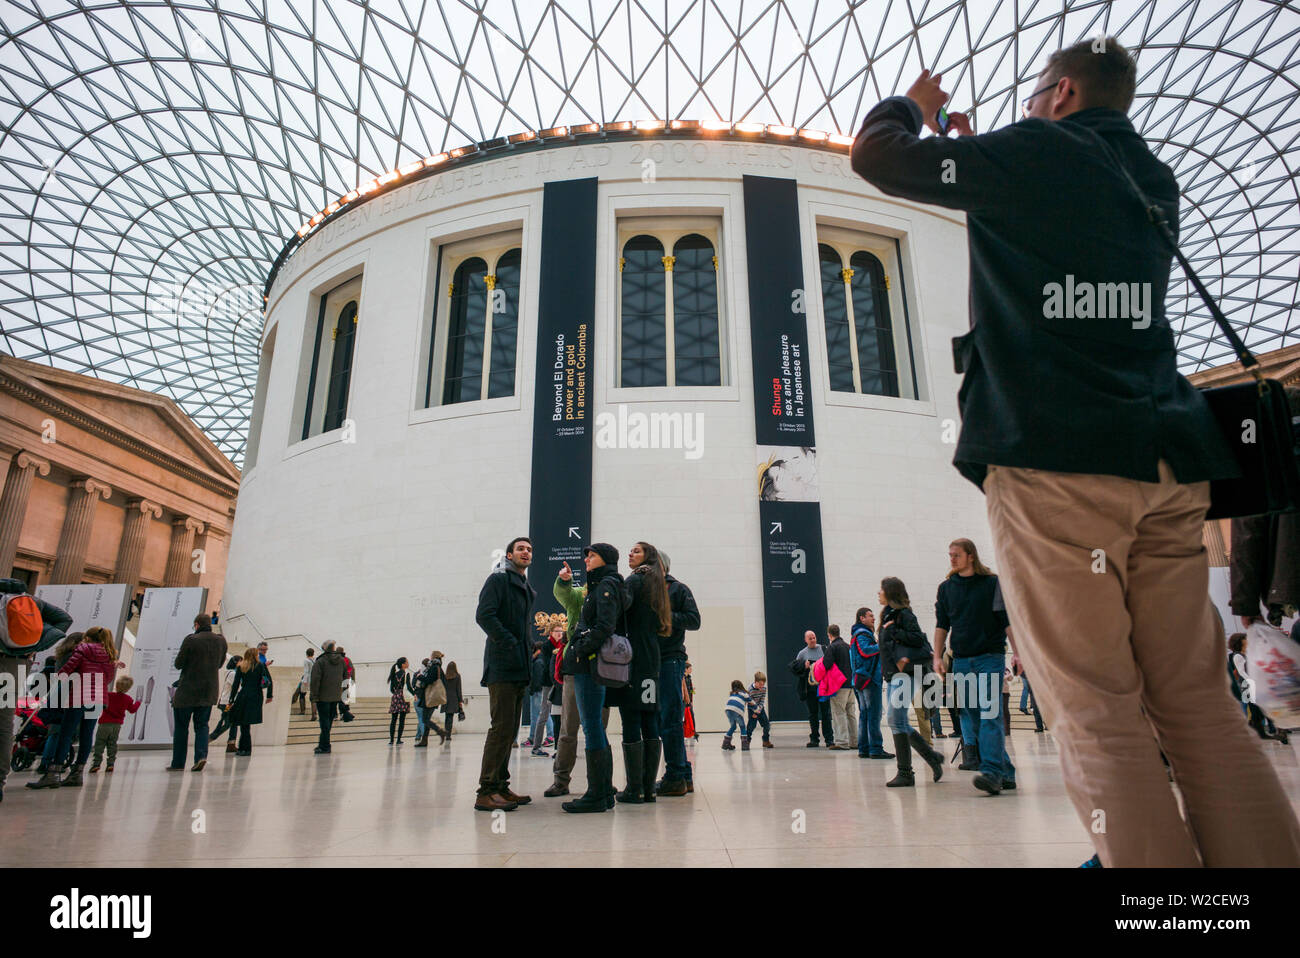 Inghilterra, London, Bloomsbury, il British Museum, il Grande Corte dall'architetto Norman Foster, la più grande piazza coperta in Europa Foto Stock